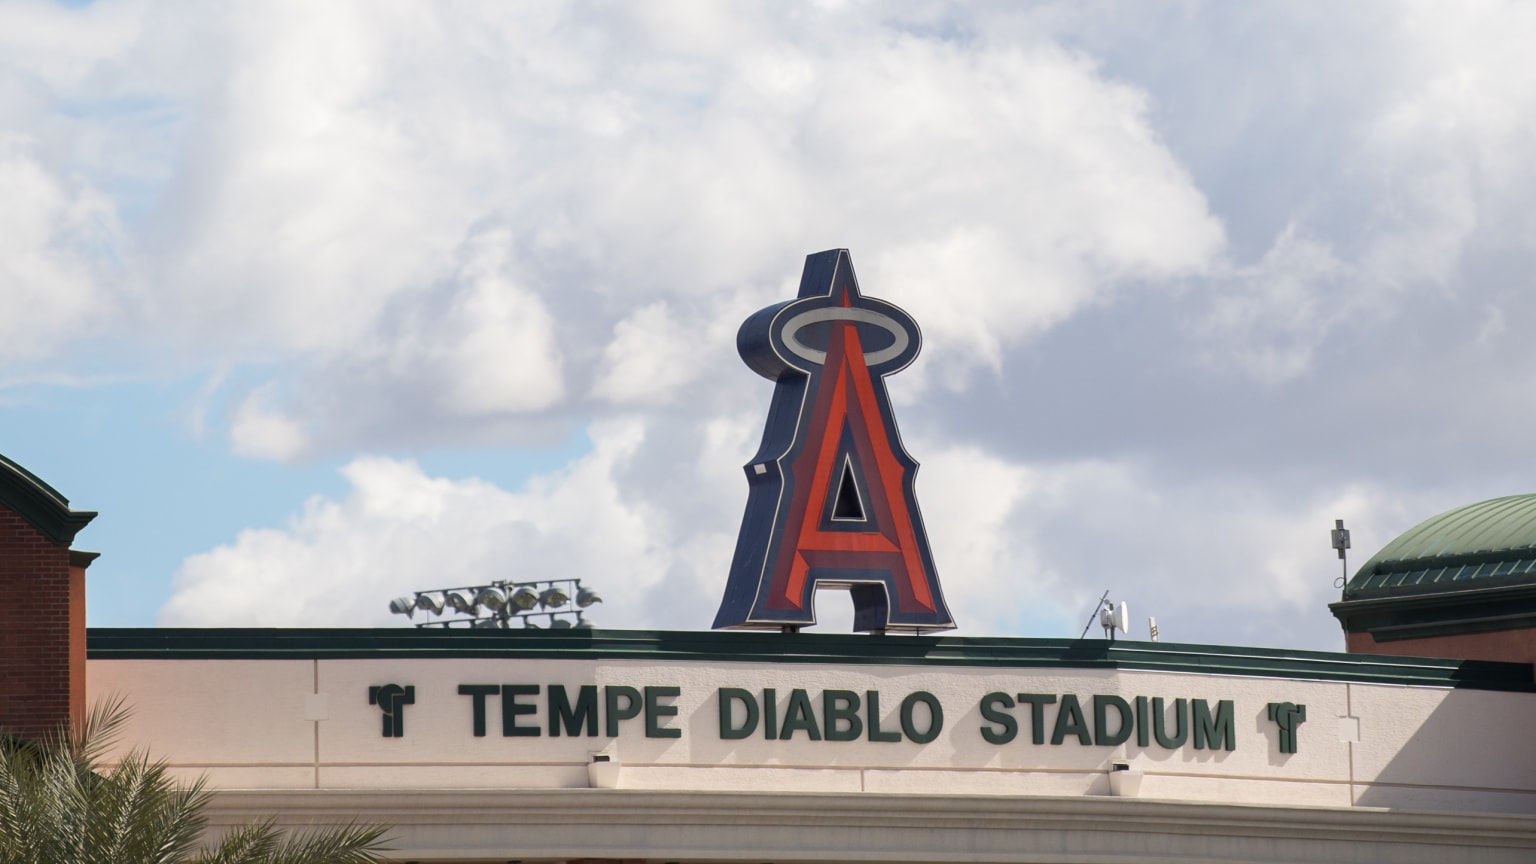 Tempe Diablo Stadium - Baseball Stadium in Tempe